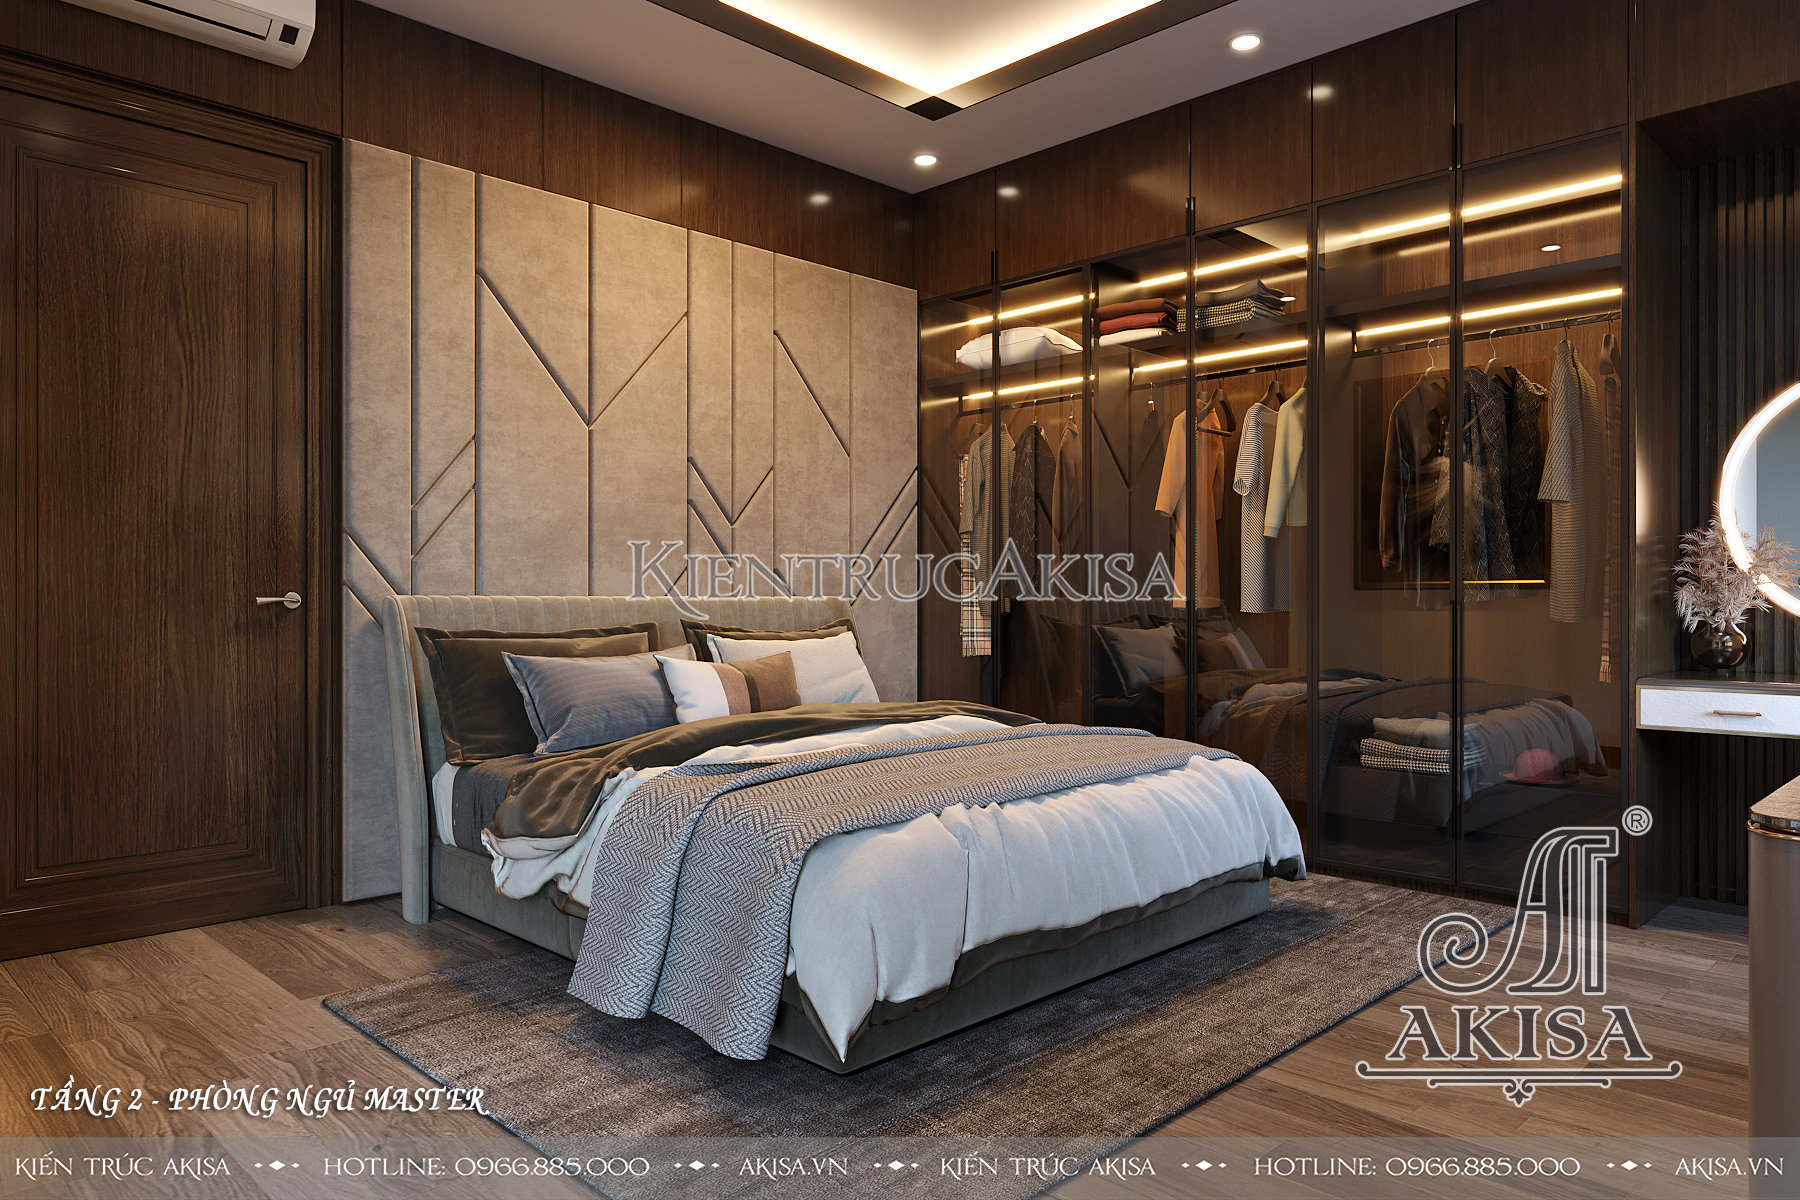 Mẫu nội thất nhà đẹp 2 tầng phong cách tân cổ điển kết hợp hiện đại - Phòng ngủ